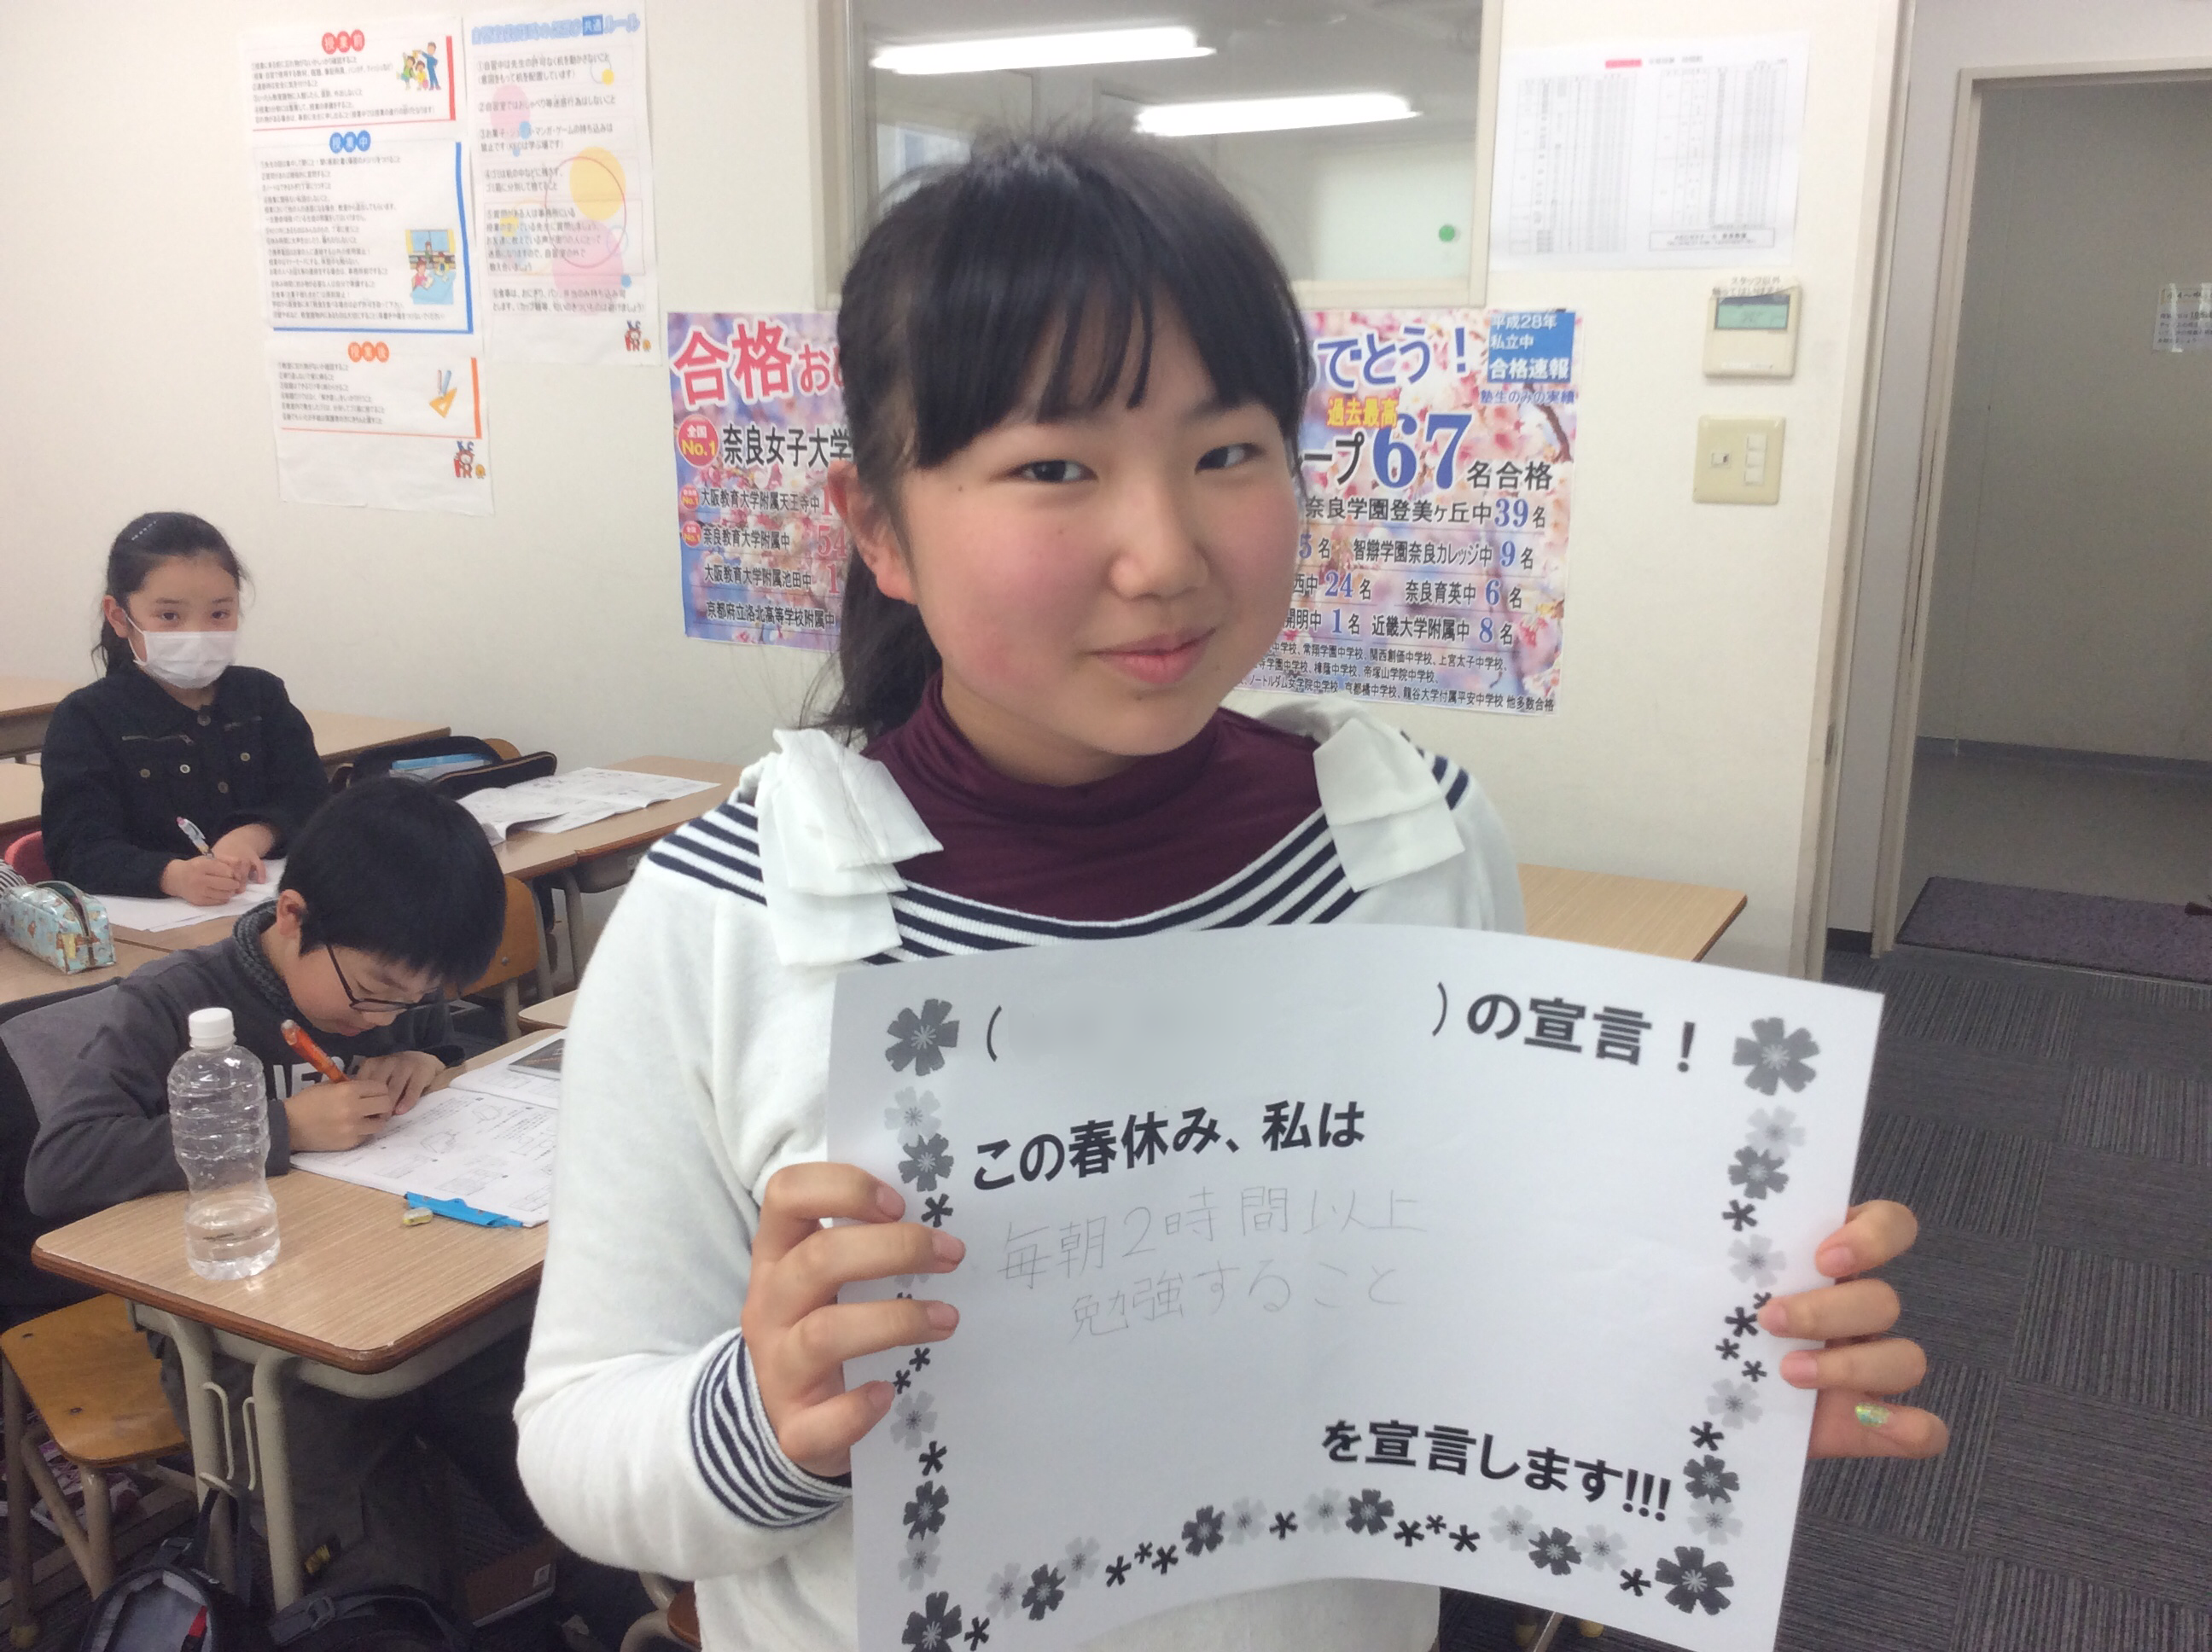 教室便り 奈良教室 奈良の塾ならkecゼミナール 奈良で塾をお探しなら